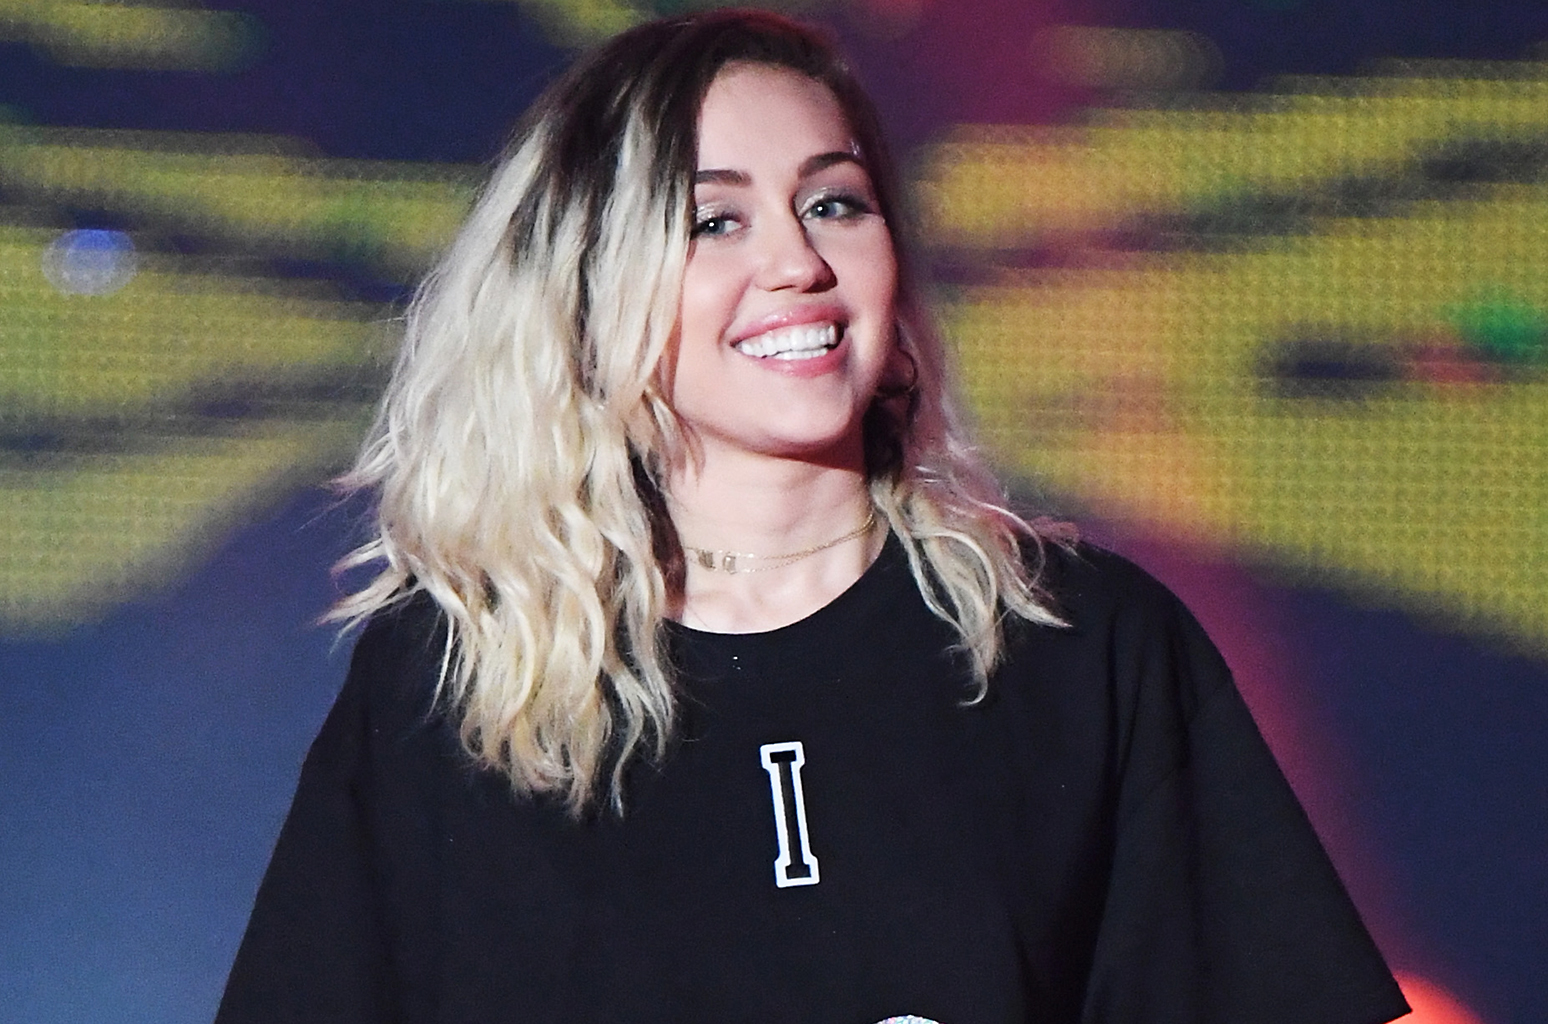 La cantautora norteamericana Miley Cyrus se presentó en el programa de Jimmy Fallon para promocionar su próximo disco.